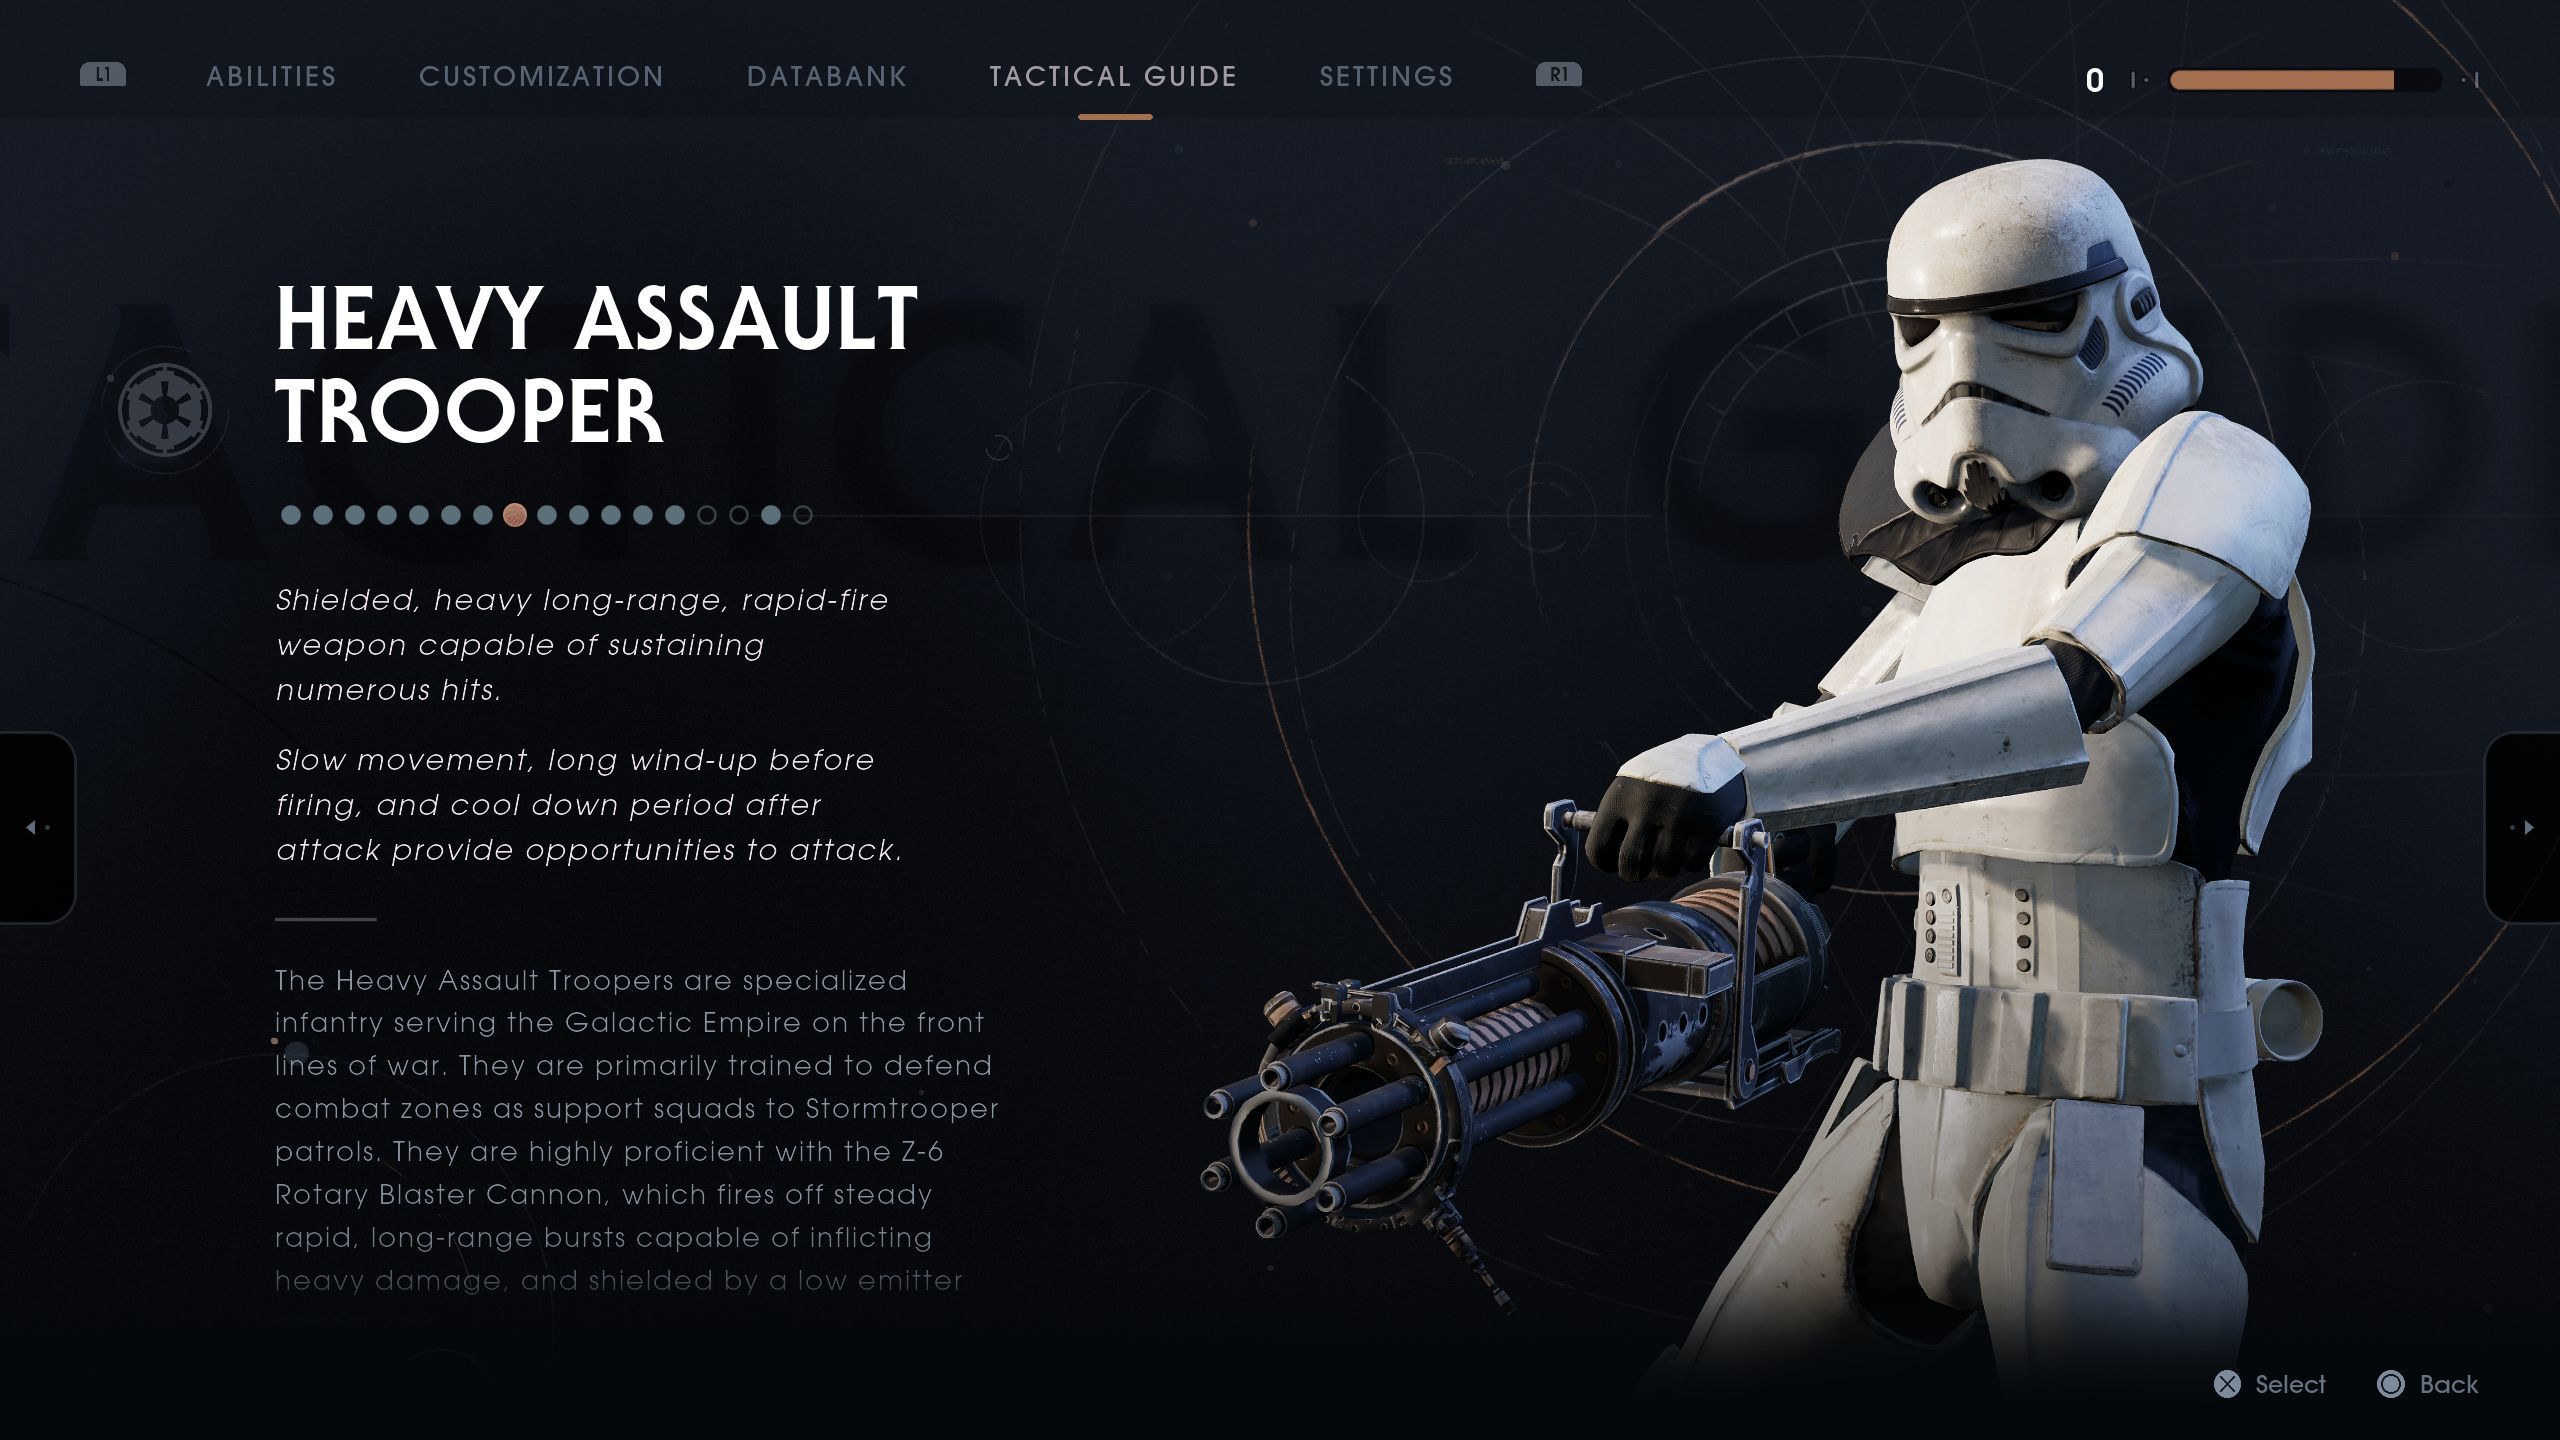 Heavy Assault Stormtrooper Wars: Jedi Fallen Order Wiki Guide